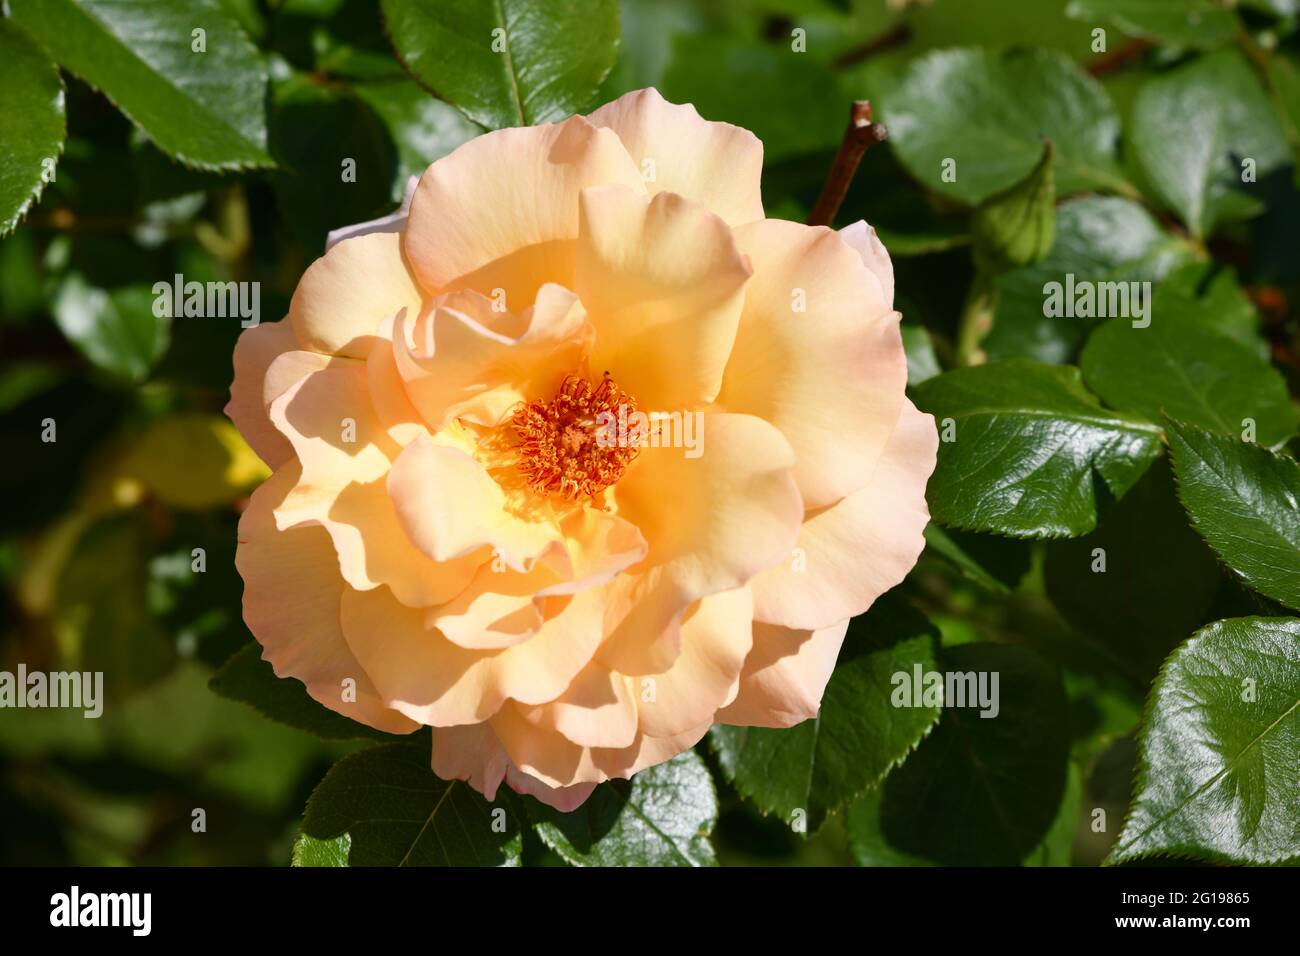 wunderschöne, einzelne orange färbige Rosenblüte - rosa - gegen das grüne Blätterwerk nach einem regenguss Stock Photo